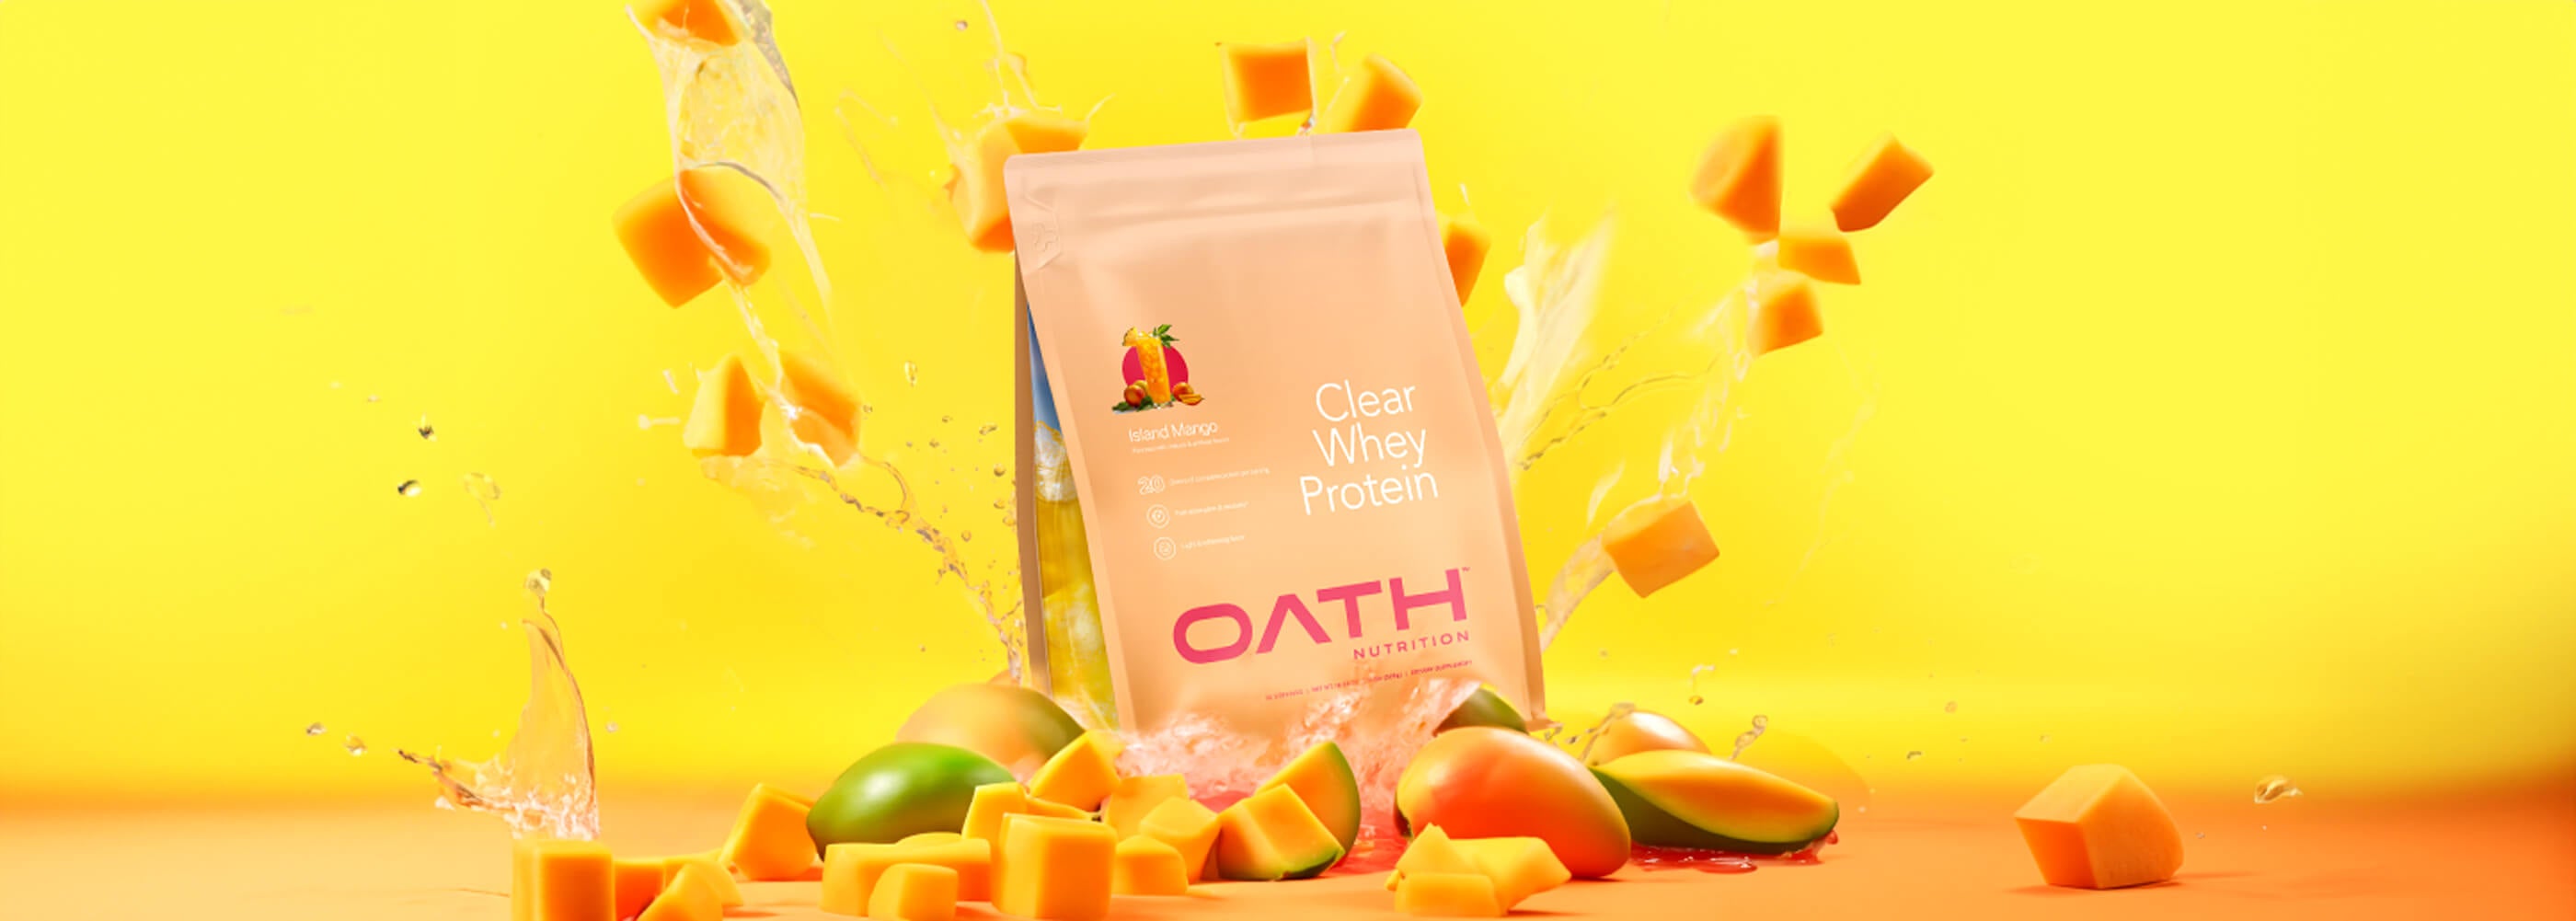 Oath Clear Whey Island Mango bag with mangos bursting all around it